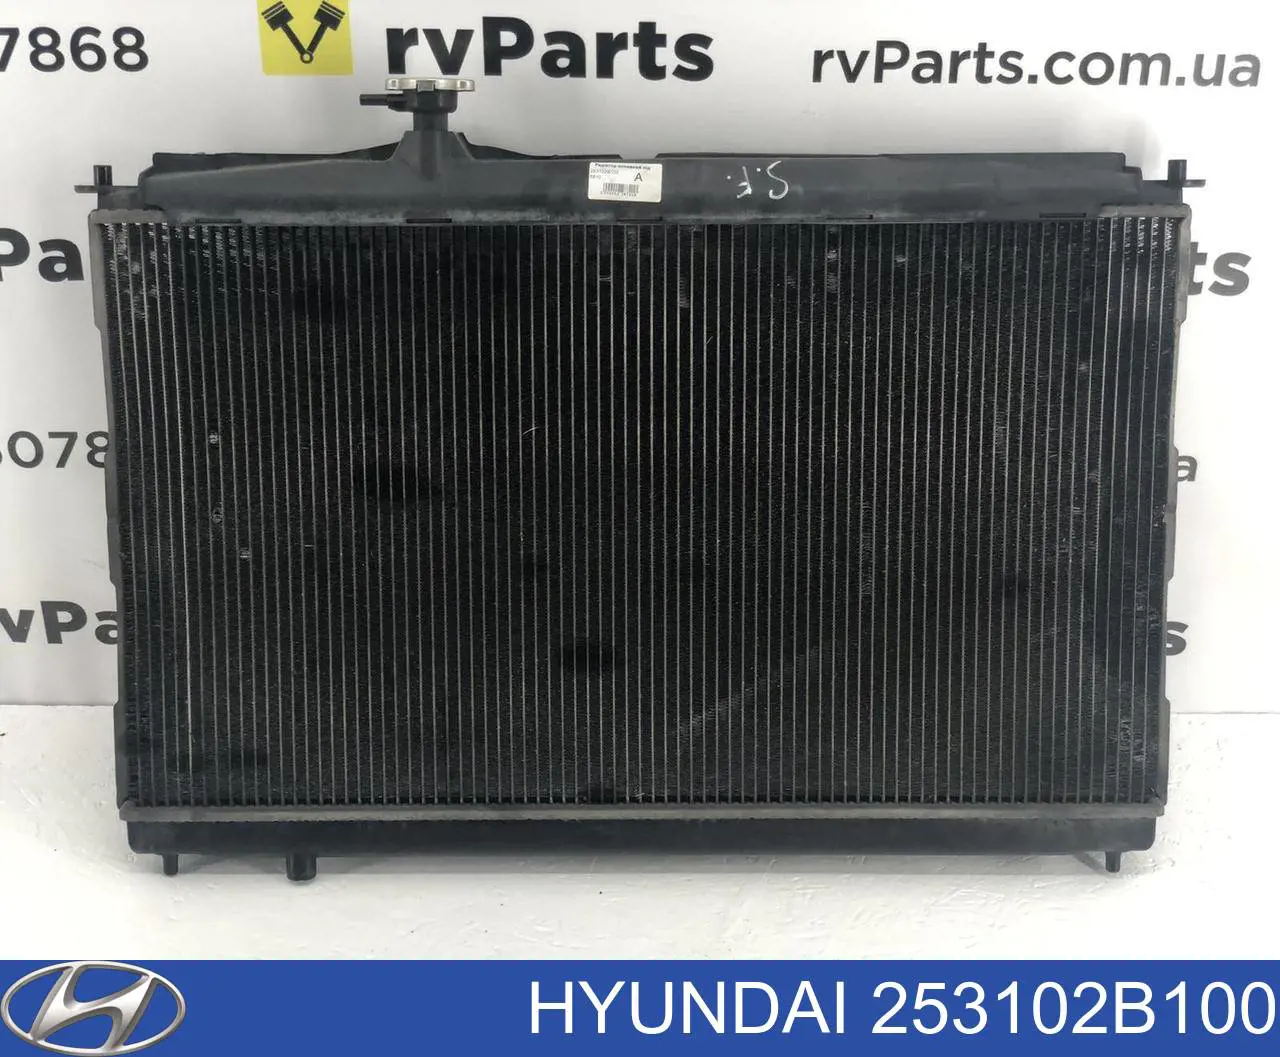 Радиатор охлаждения двигателя Hyundai/Kia 253102B100